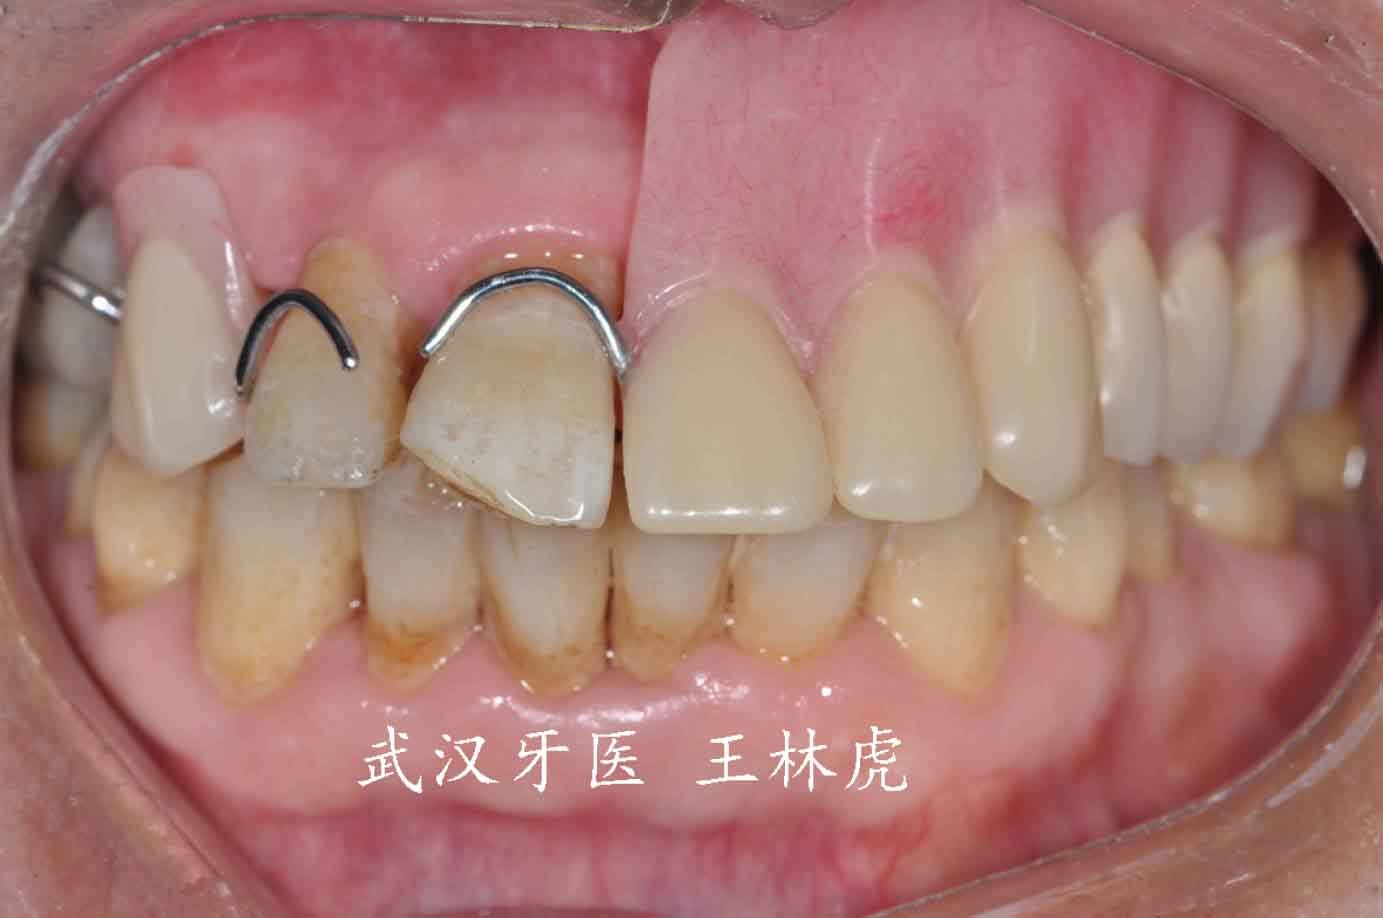 因而许多口腔颌面部缺损仍需采用人工材料的赝复体进行修复